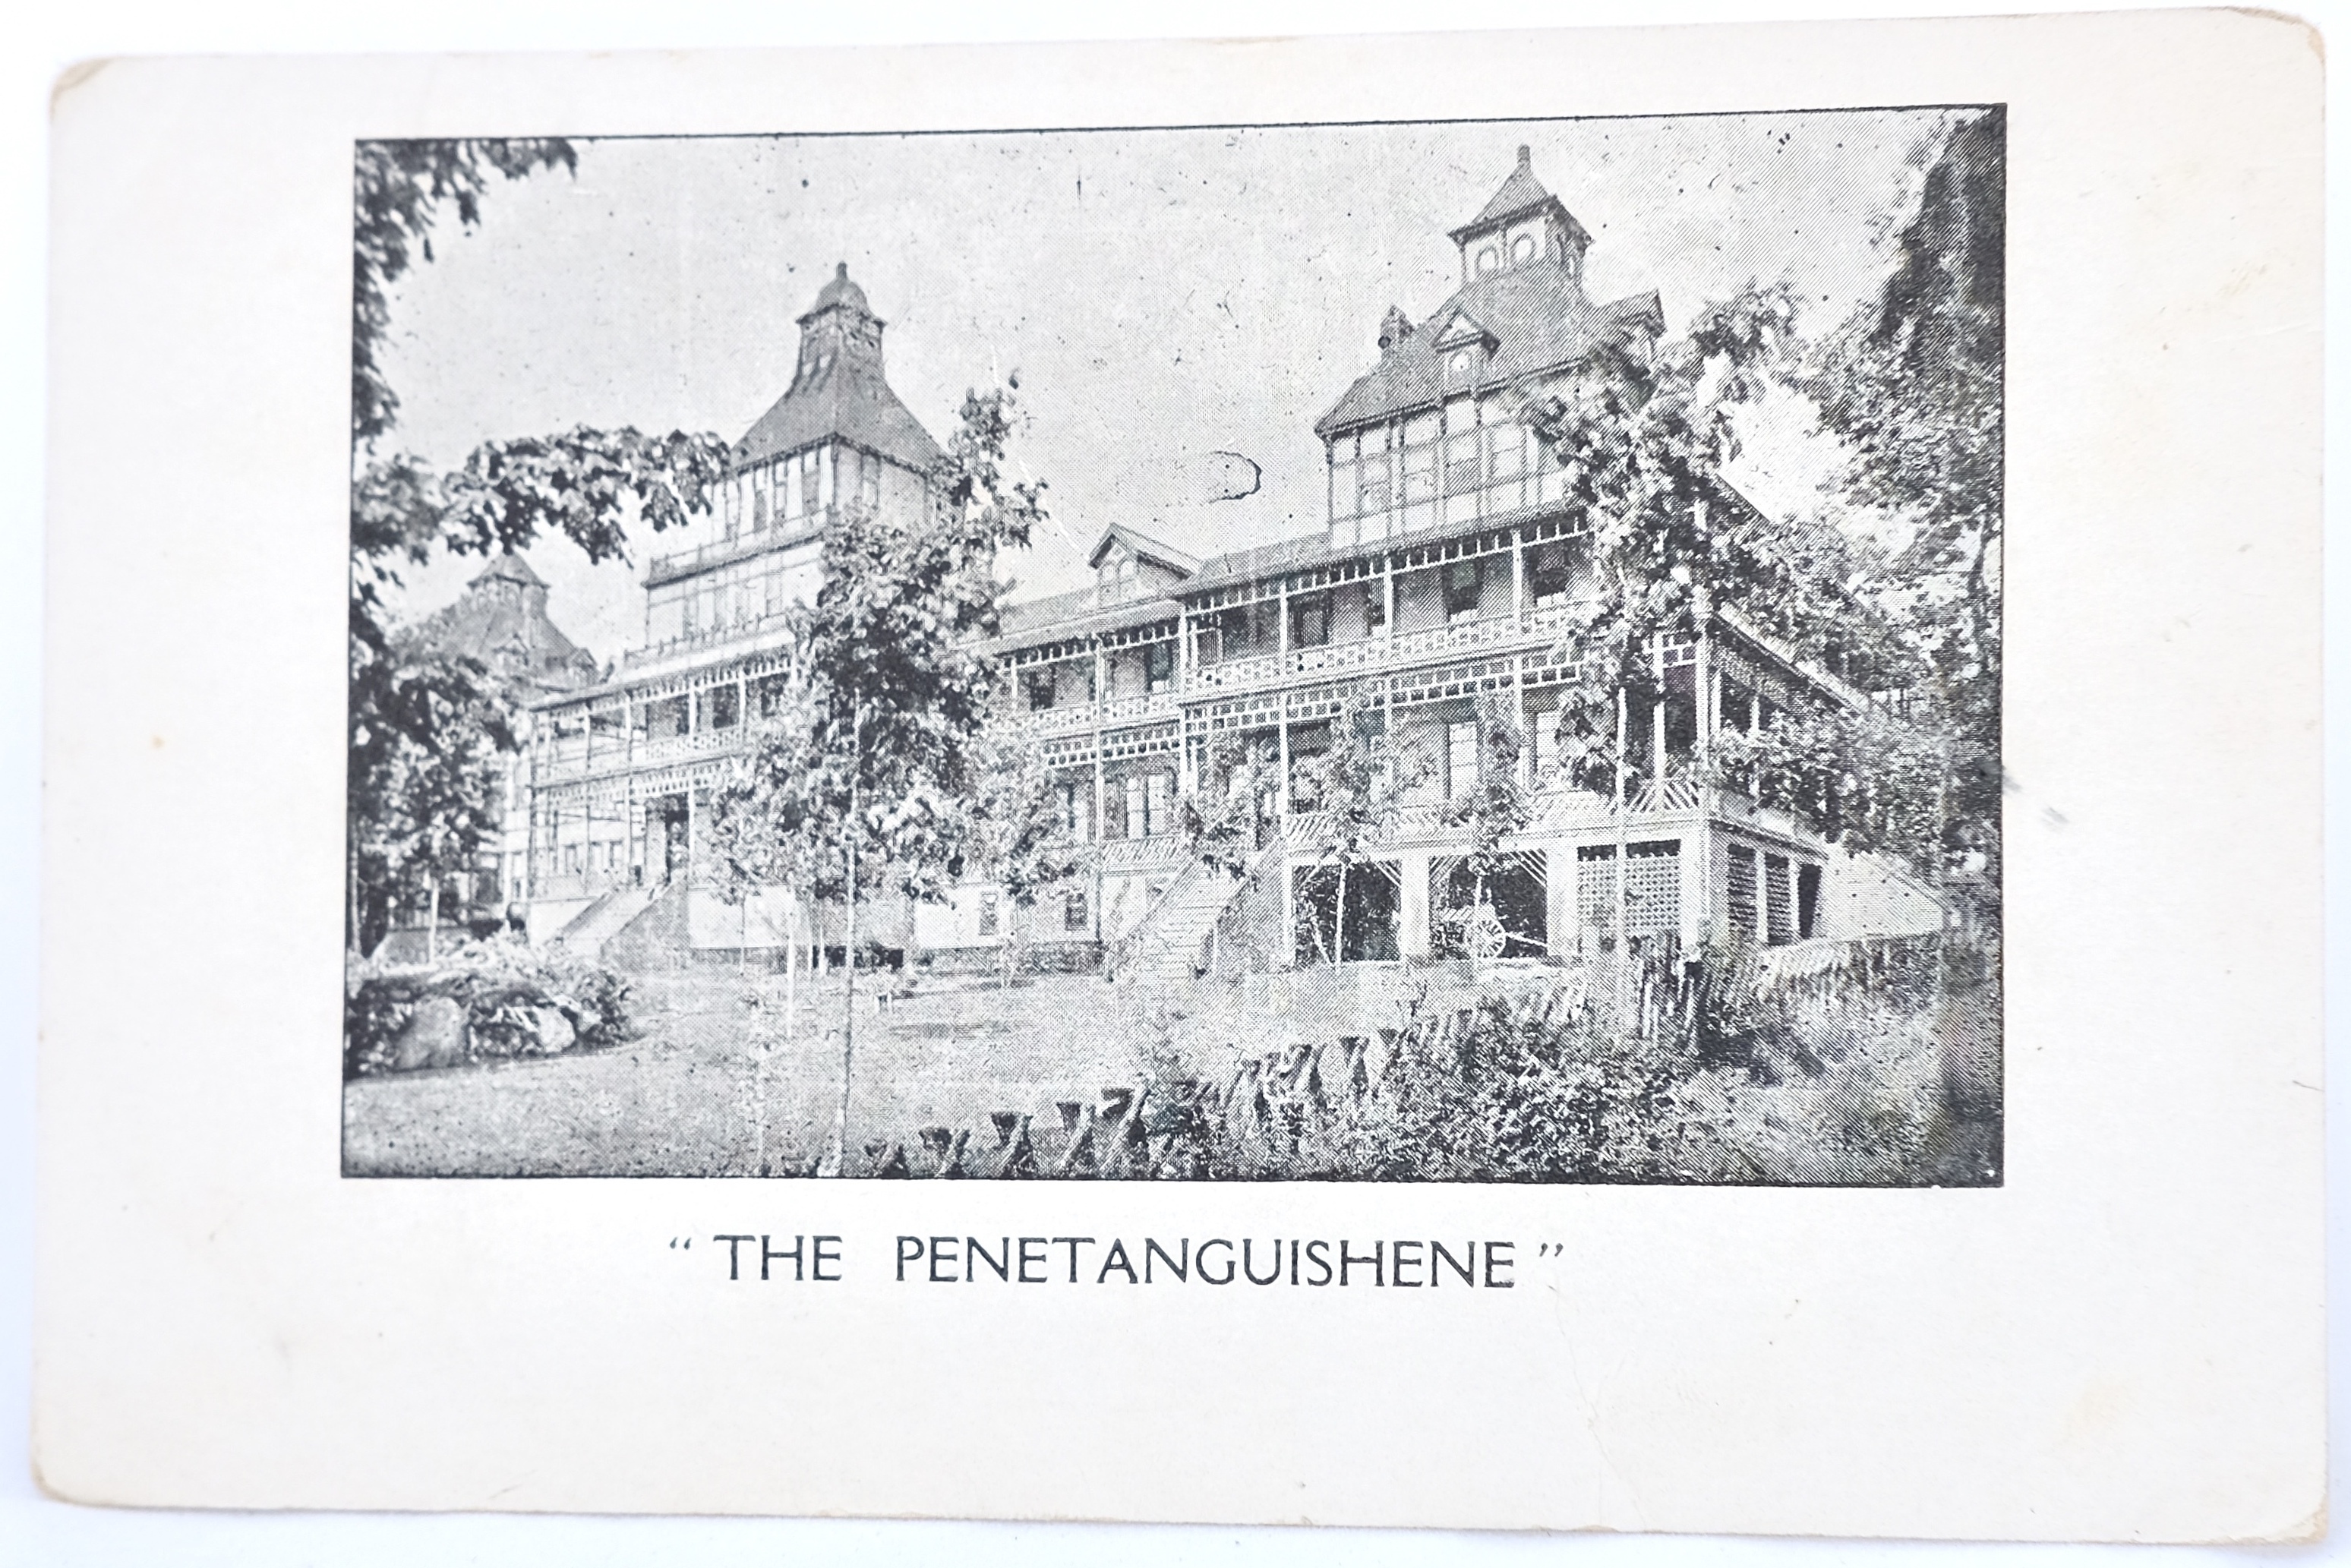 The Penetanguishene